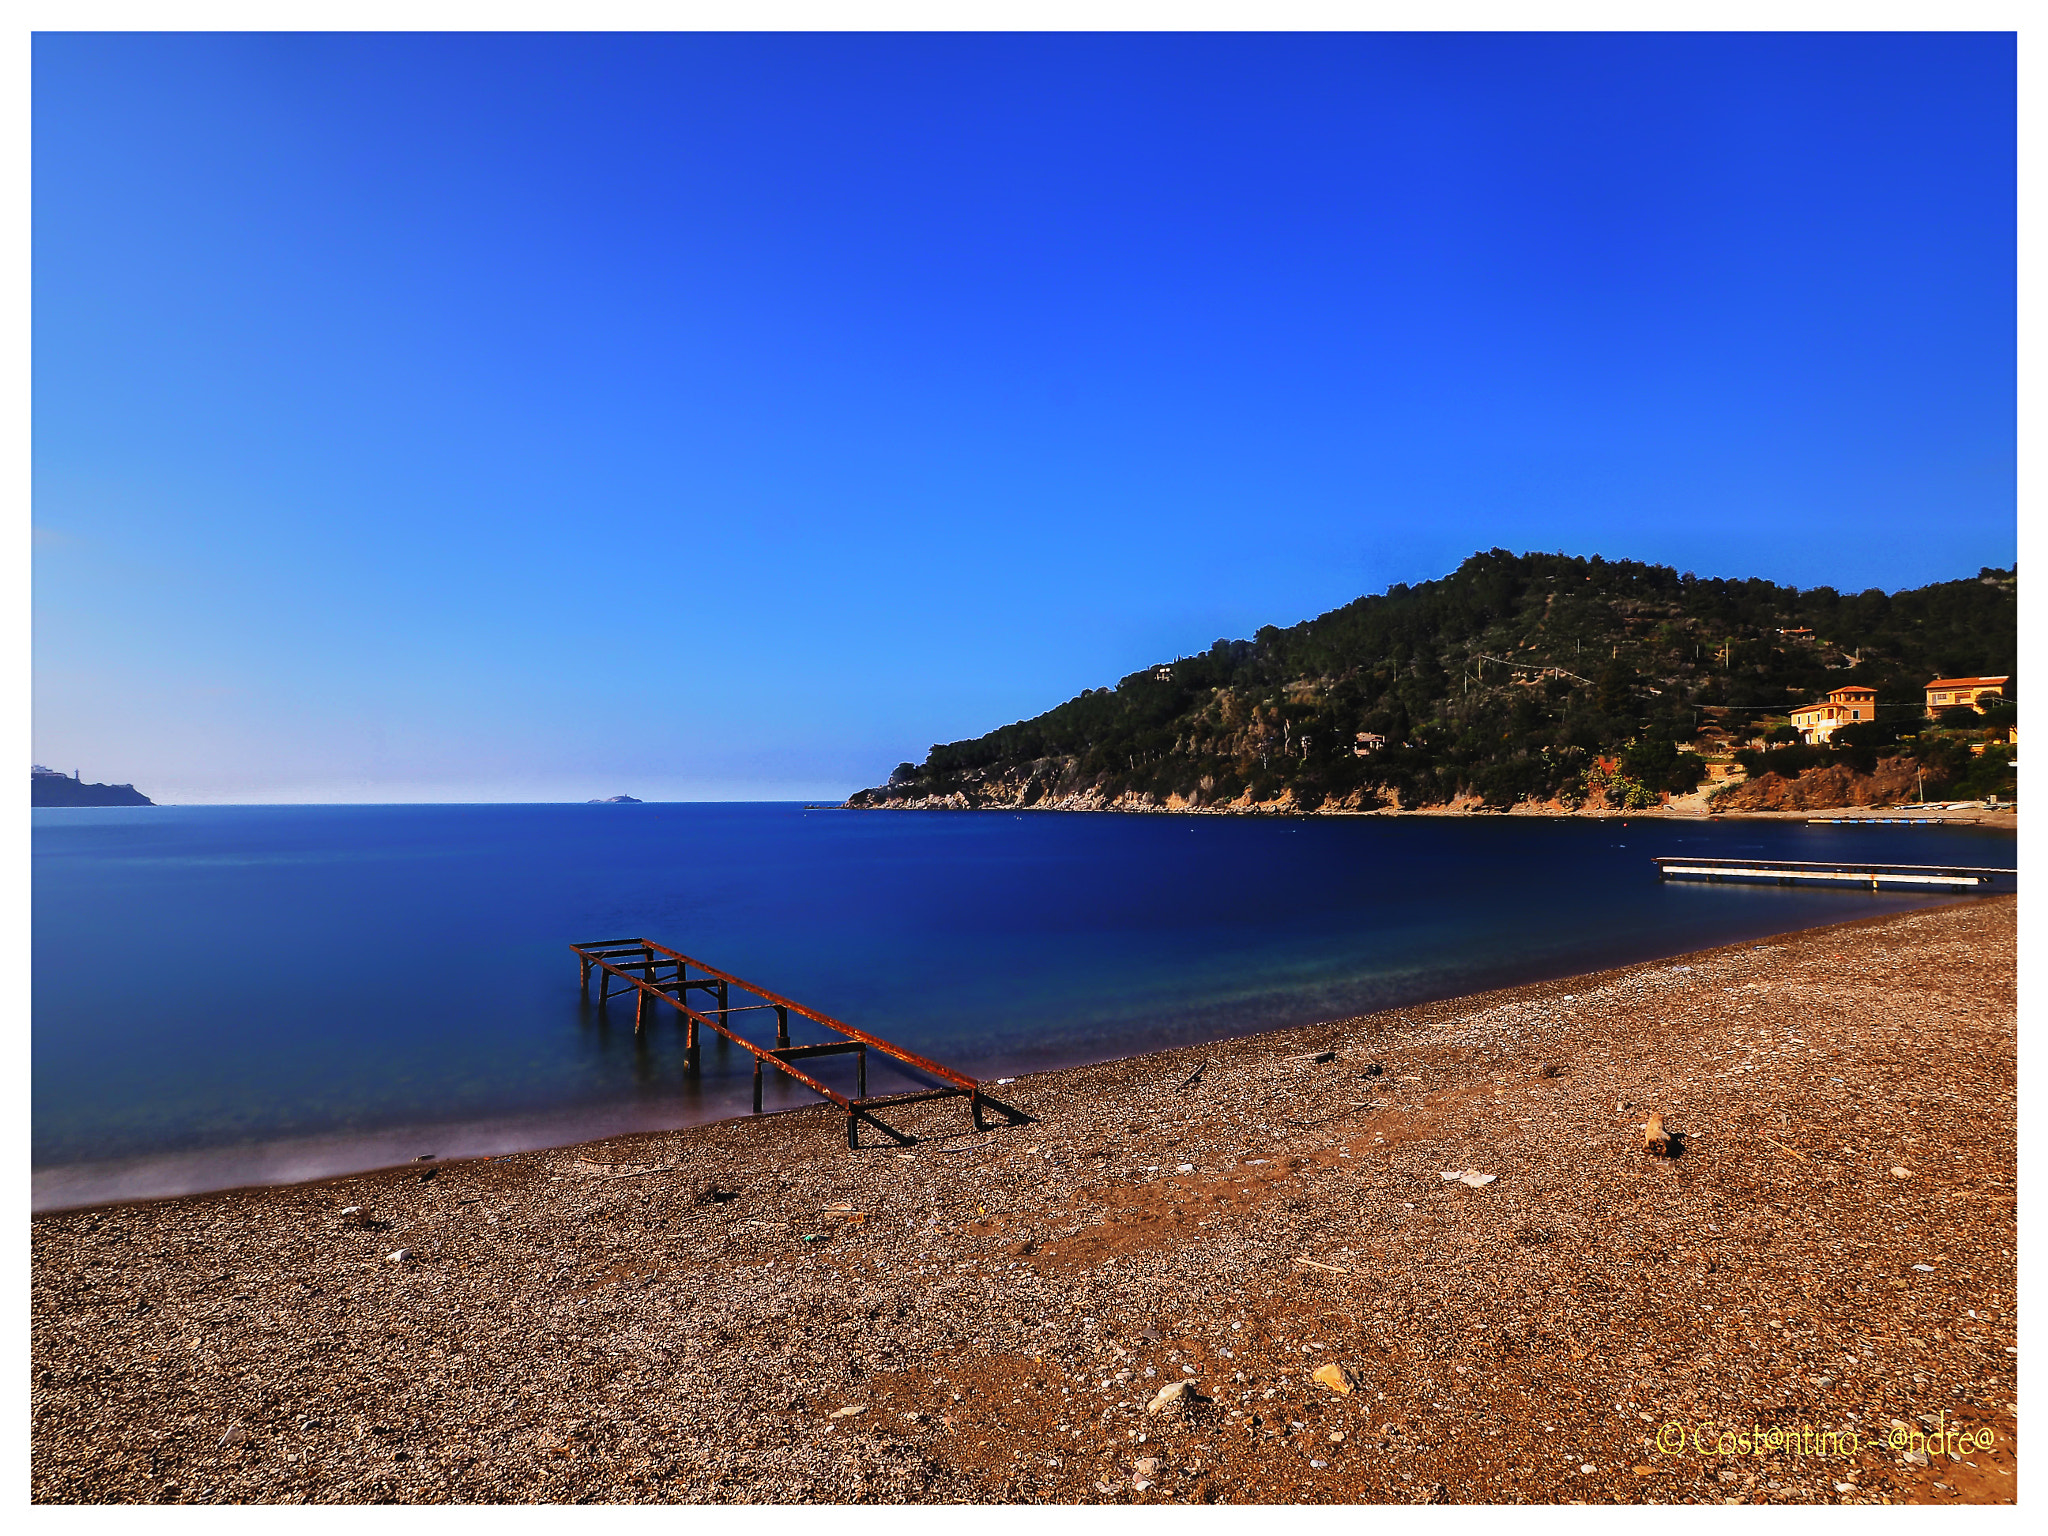 Olympus PEN-F sample photo. Un angolo caratteristico dell'isola d'elba: la spiaggia di bagnaia photography